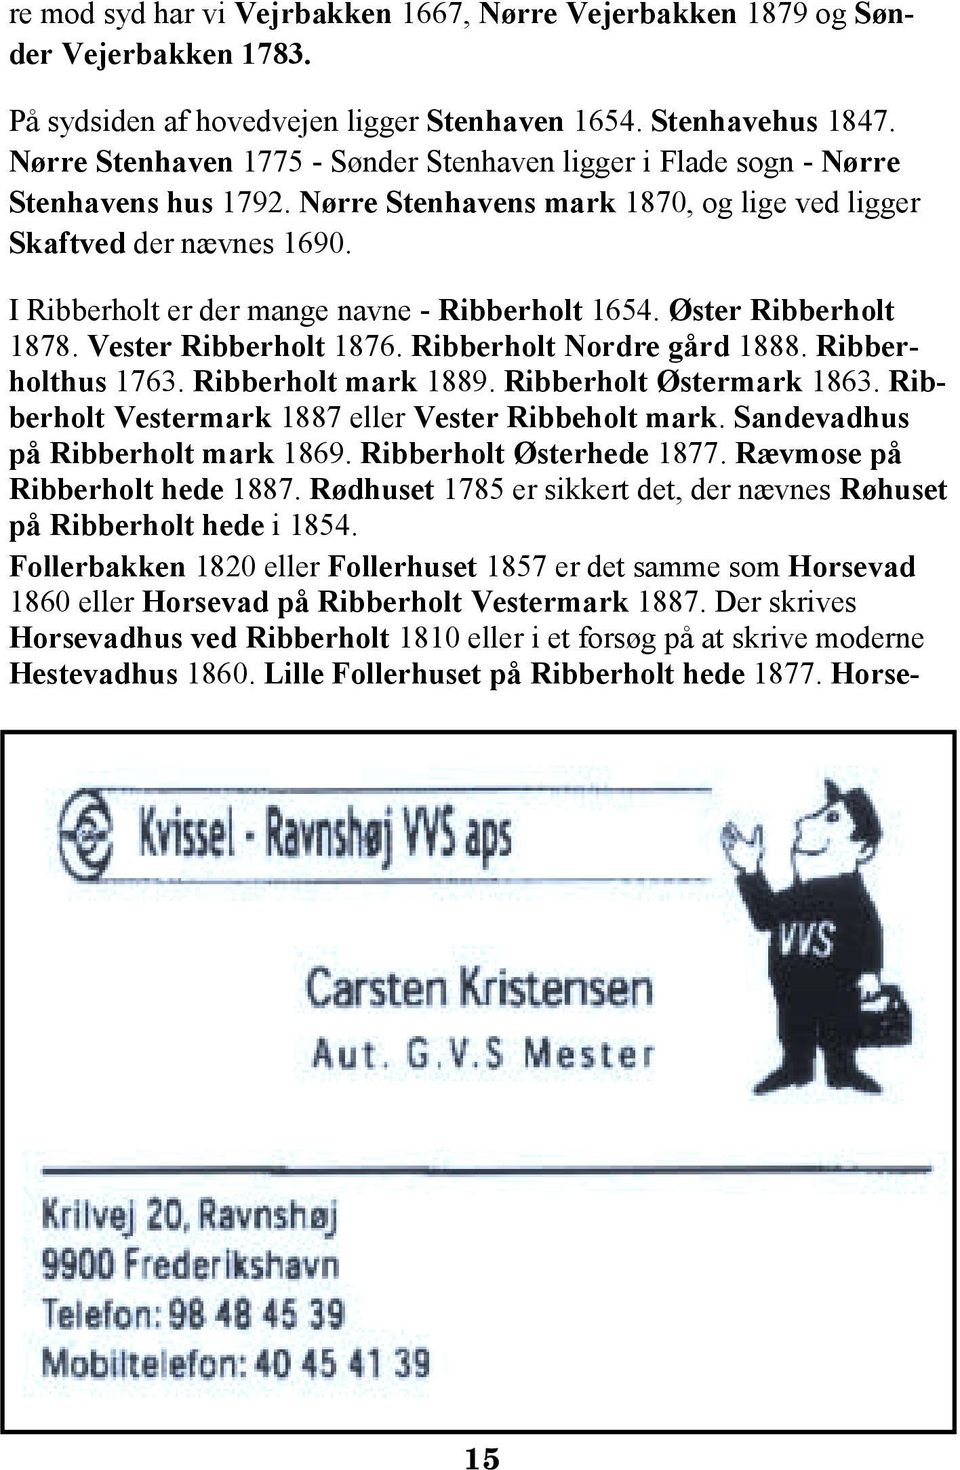 I Ribberholt er der mange navne - Ribberholt 1654. Øster Ribberholt 1878. Vester Ribberholt 1876. Ribberholt Nordre gård 1888. Ribberholthus 1763. Ribberholt mark 1889. Ribberholt Østermark 1863.